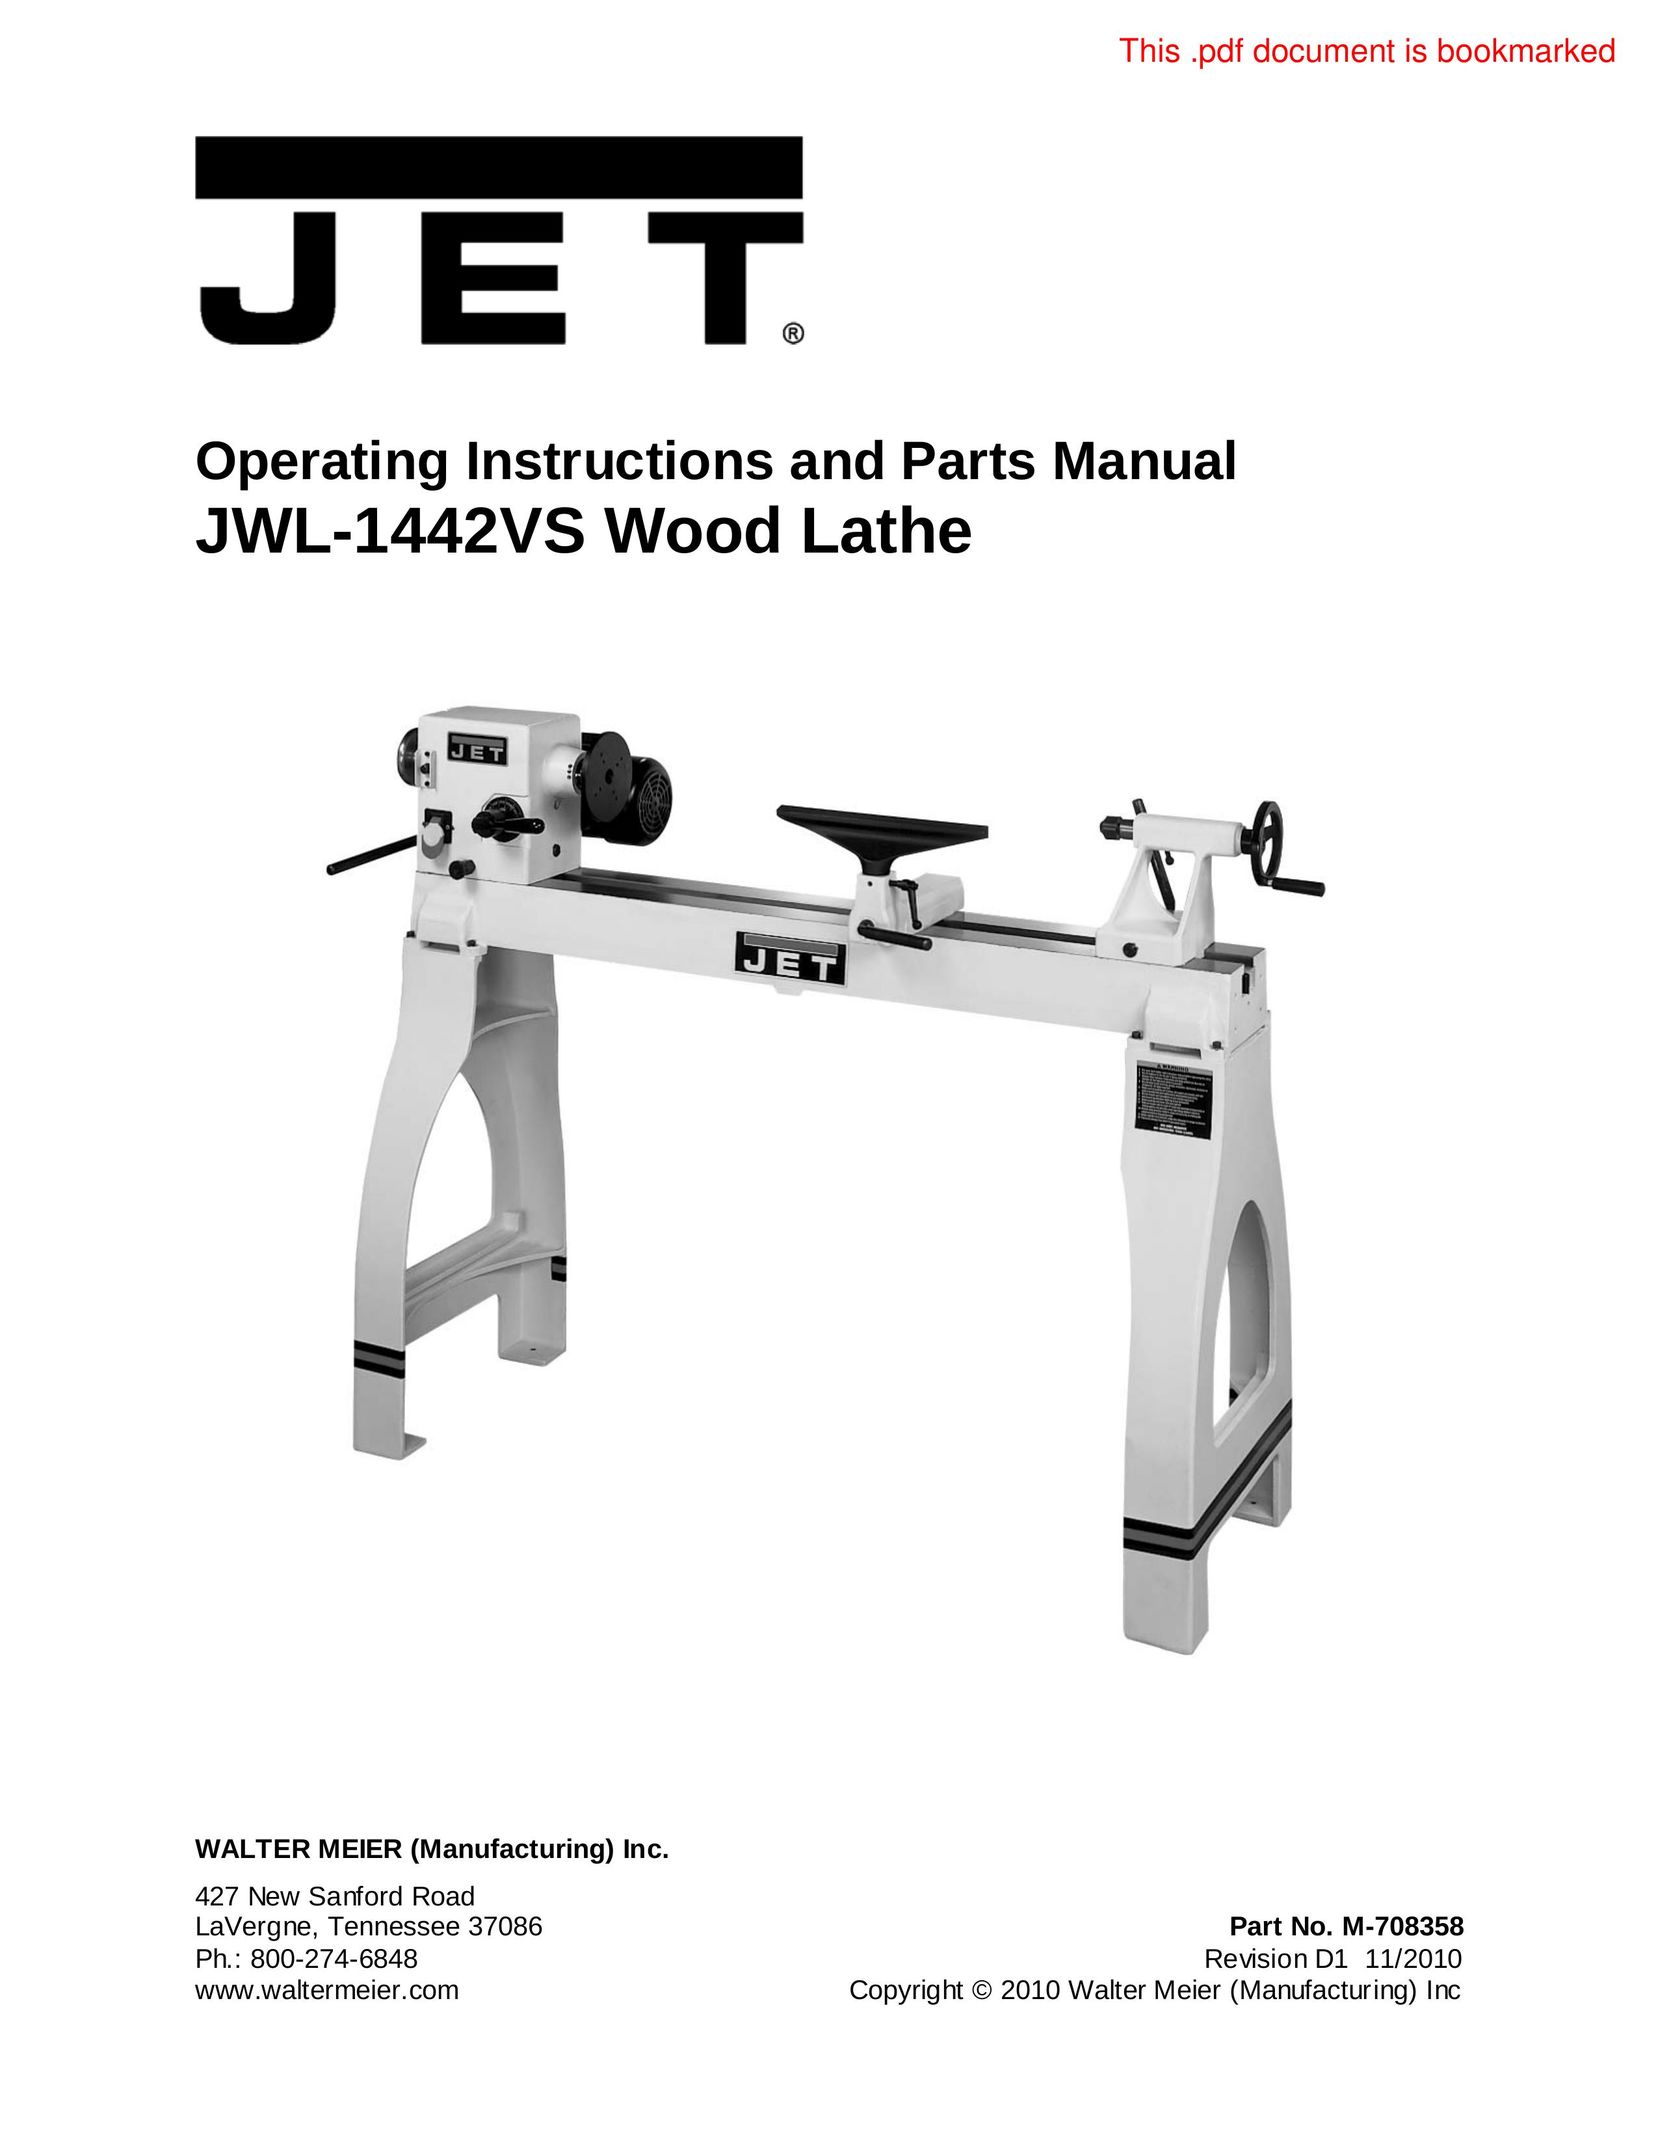 Jet Tools JWL-1442VS Lathe User Manual